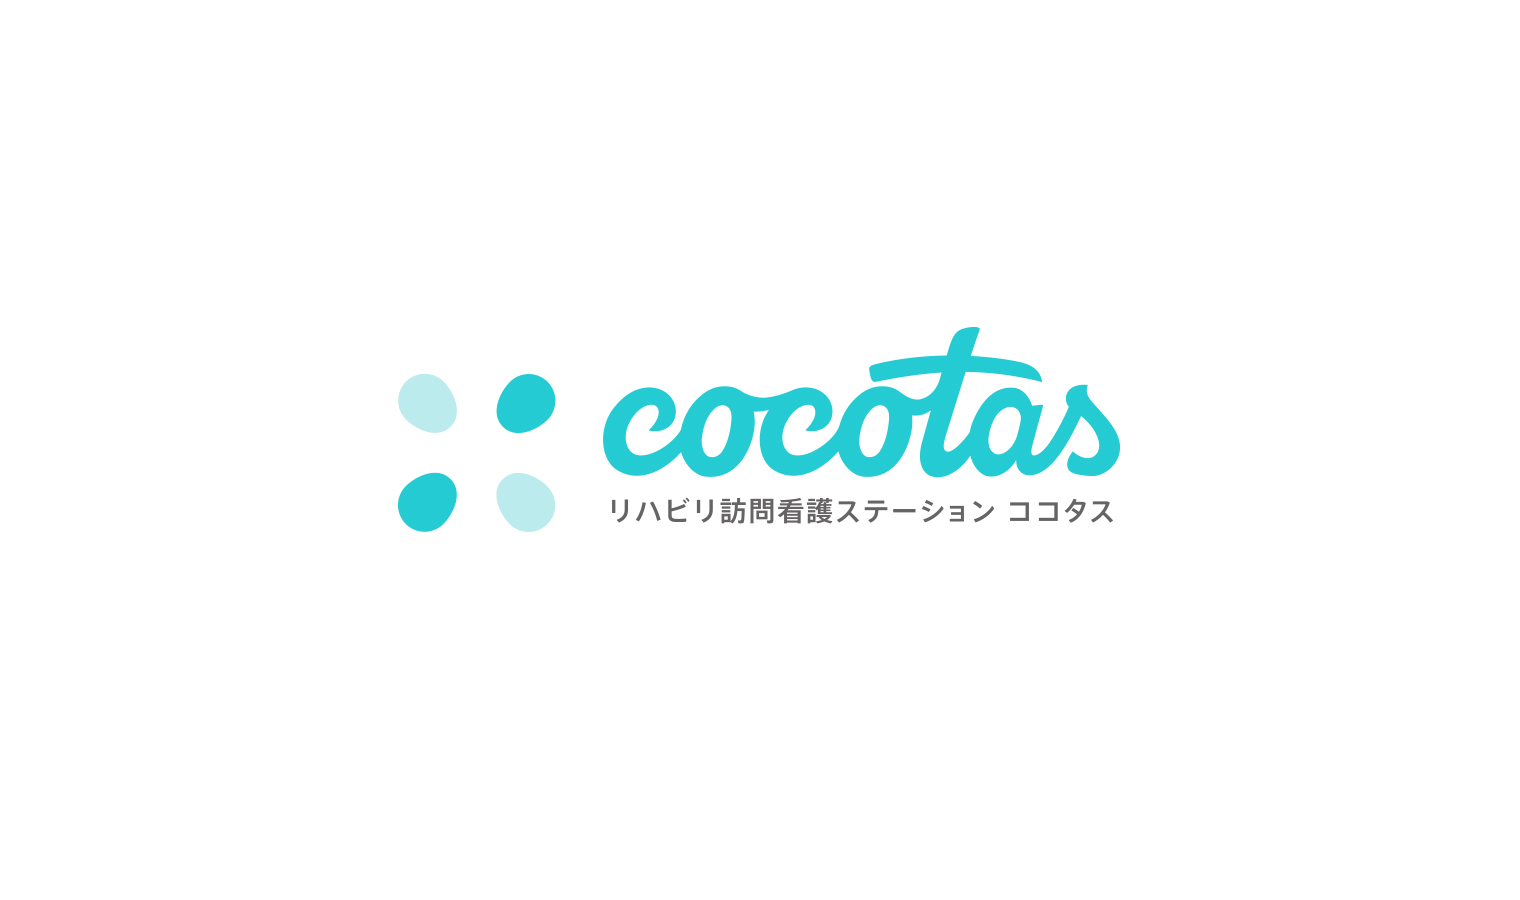 cocotas Logo type